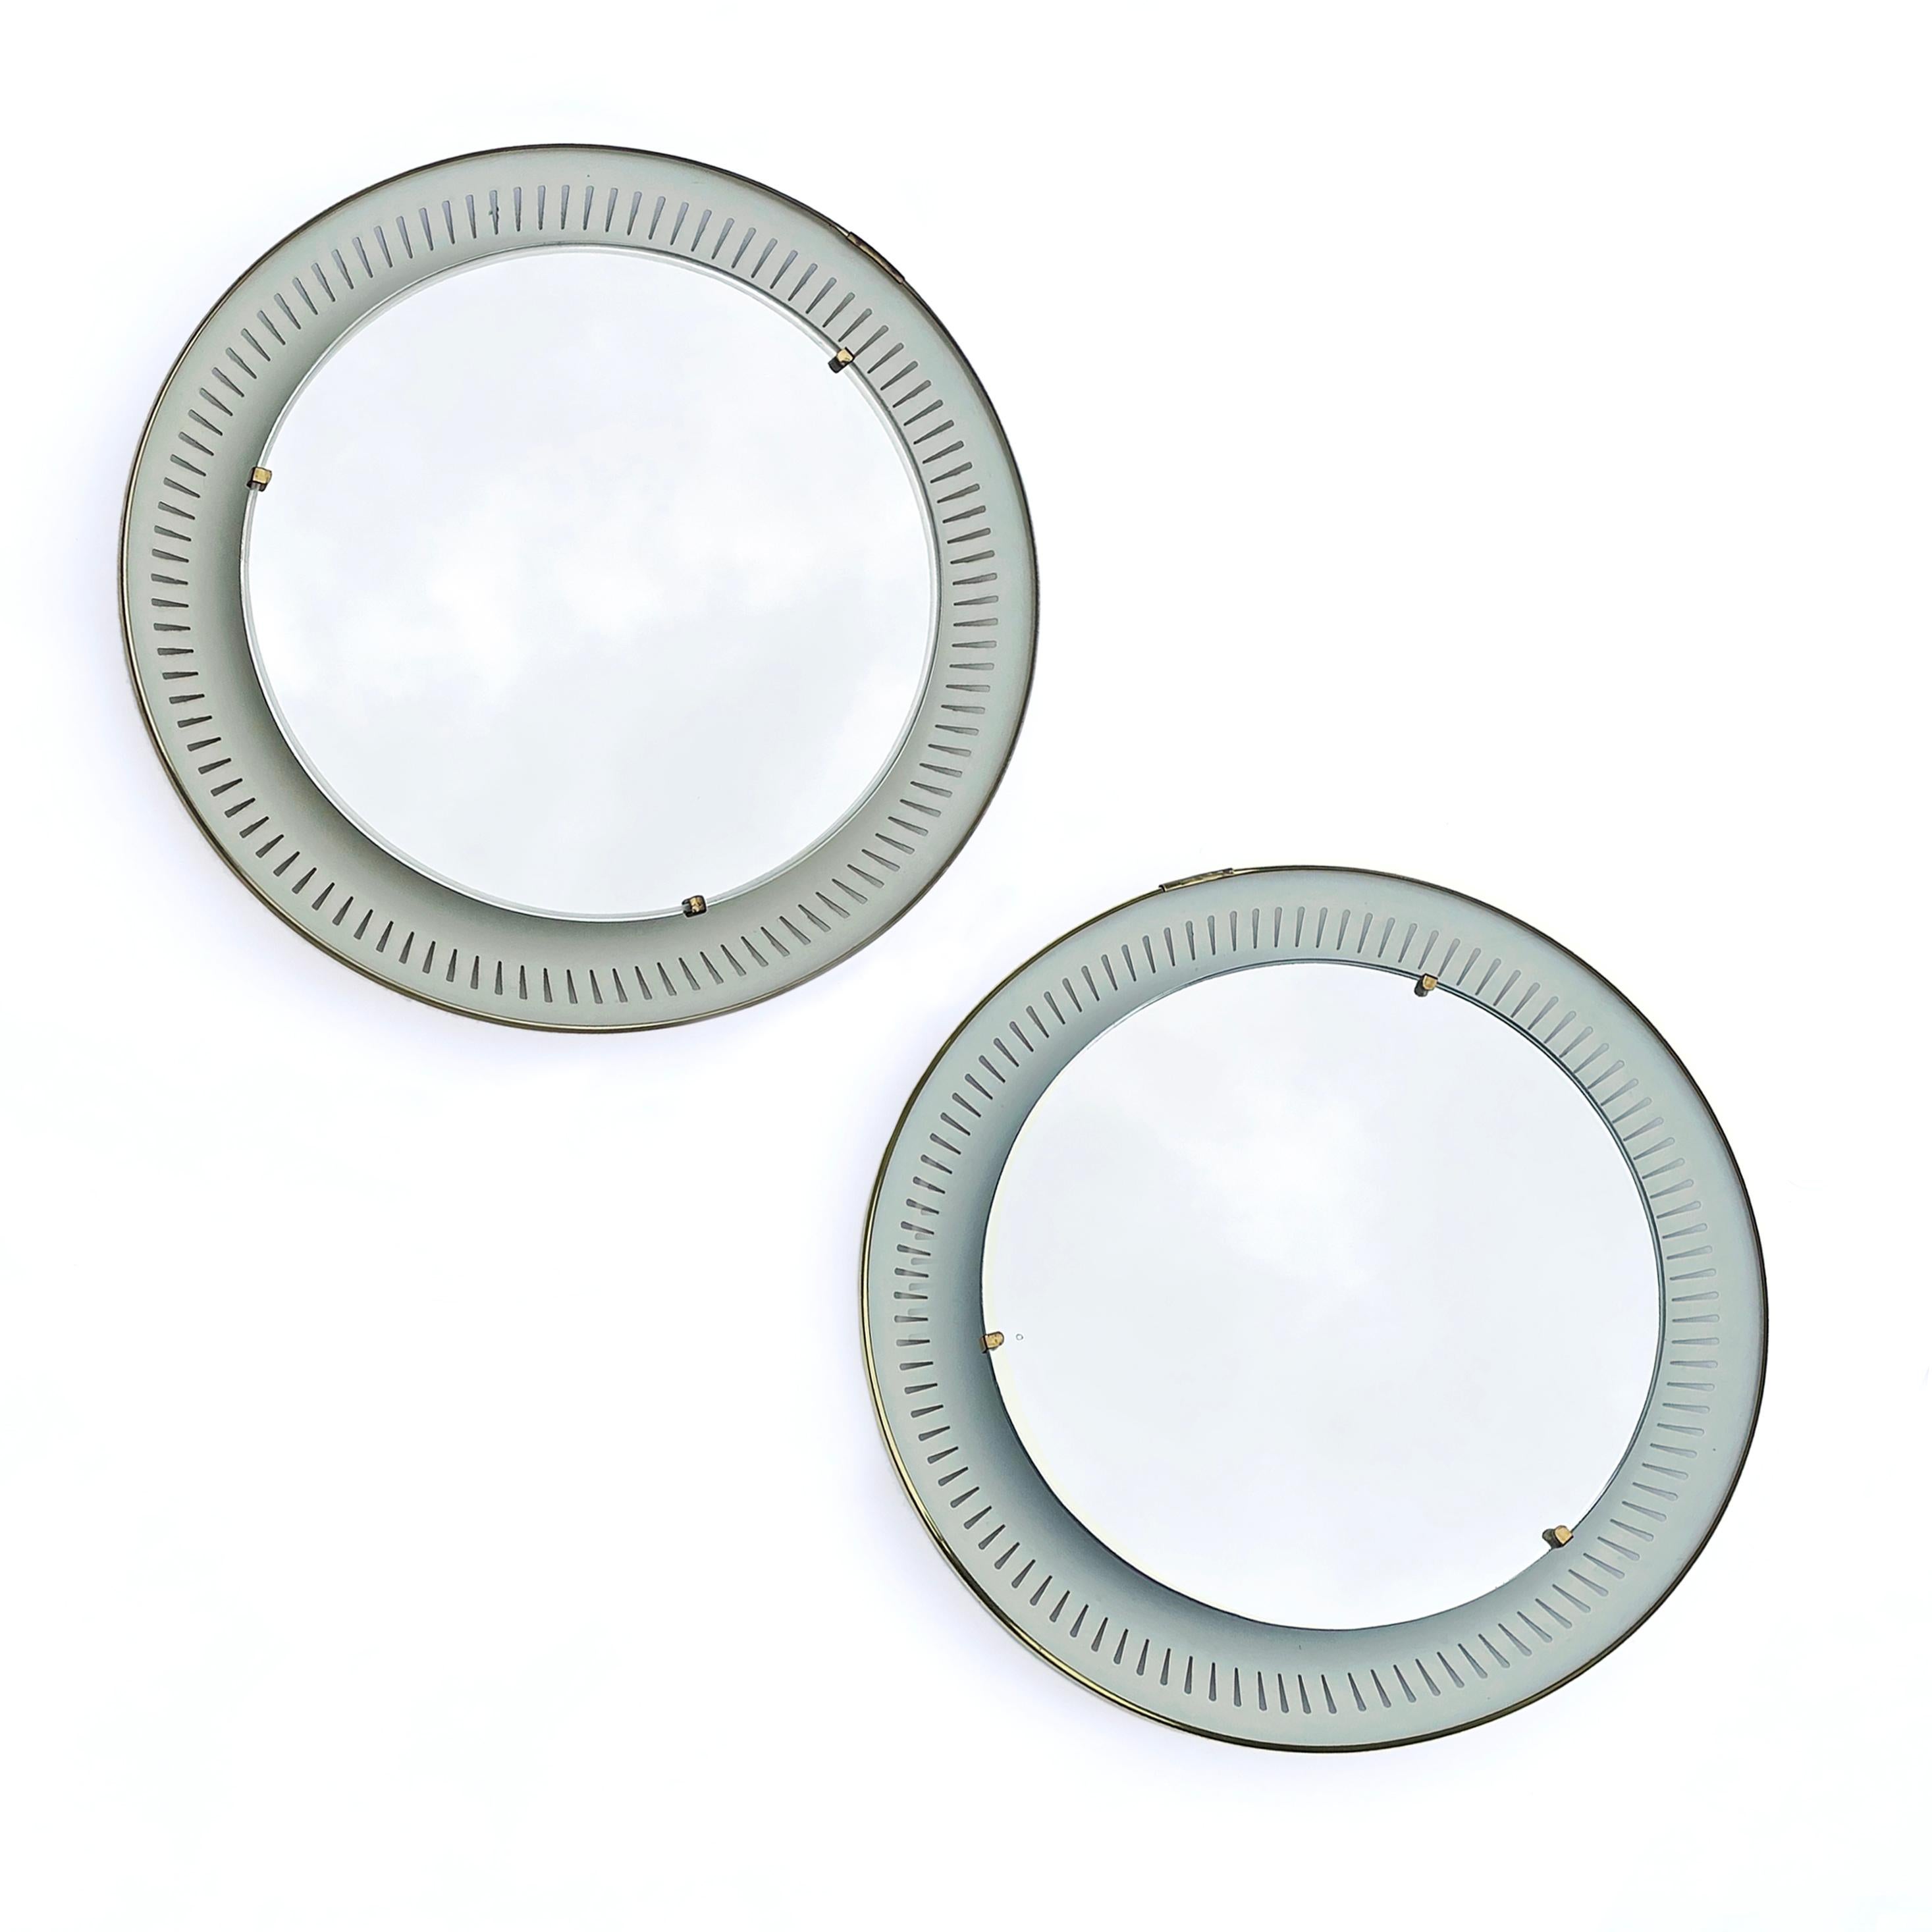 Deux beaux miroirs muraux lumineux de haute qualité de la société allemande Hillebrand datant des années 1950. 
Le miroir rond en cristal repose sur un réflecteur en métal décoré de fentes. En outre, le réflecteur est décoré d'un bord en laiton. Le